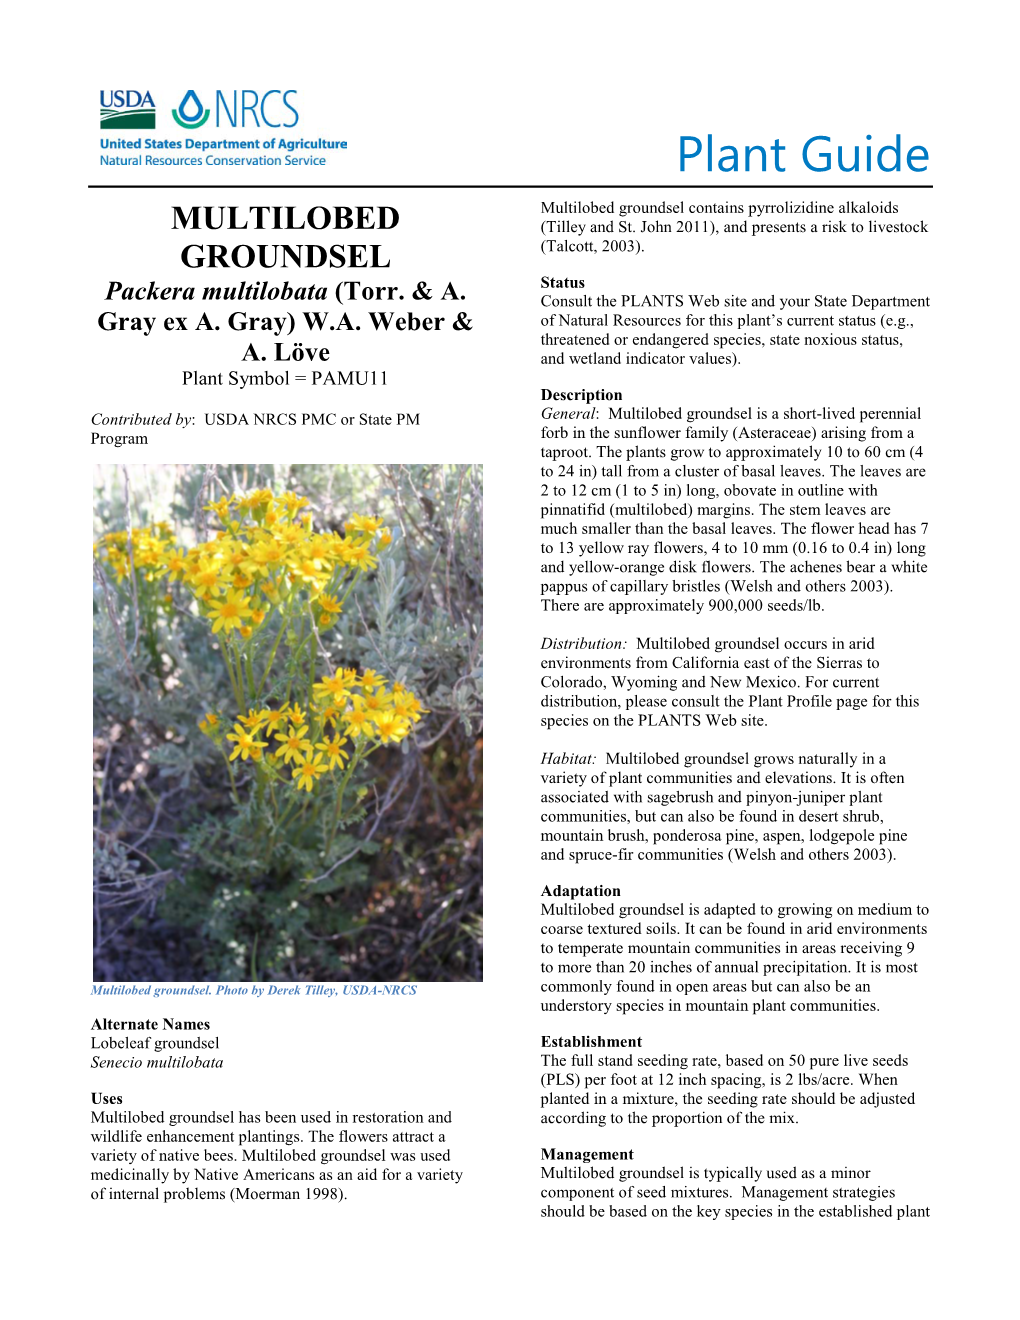 Plant Guide for Multilobed Groundsel (Packera Multilobata)